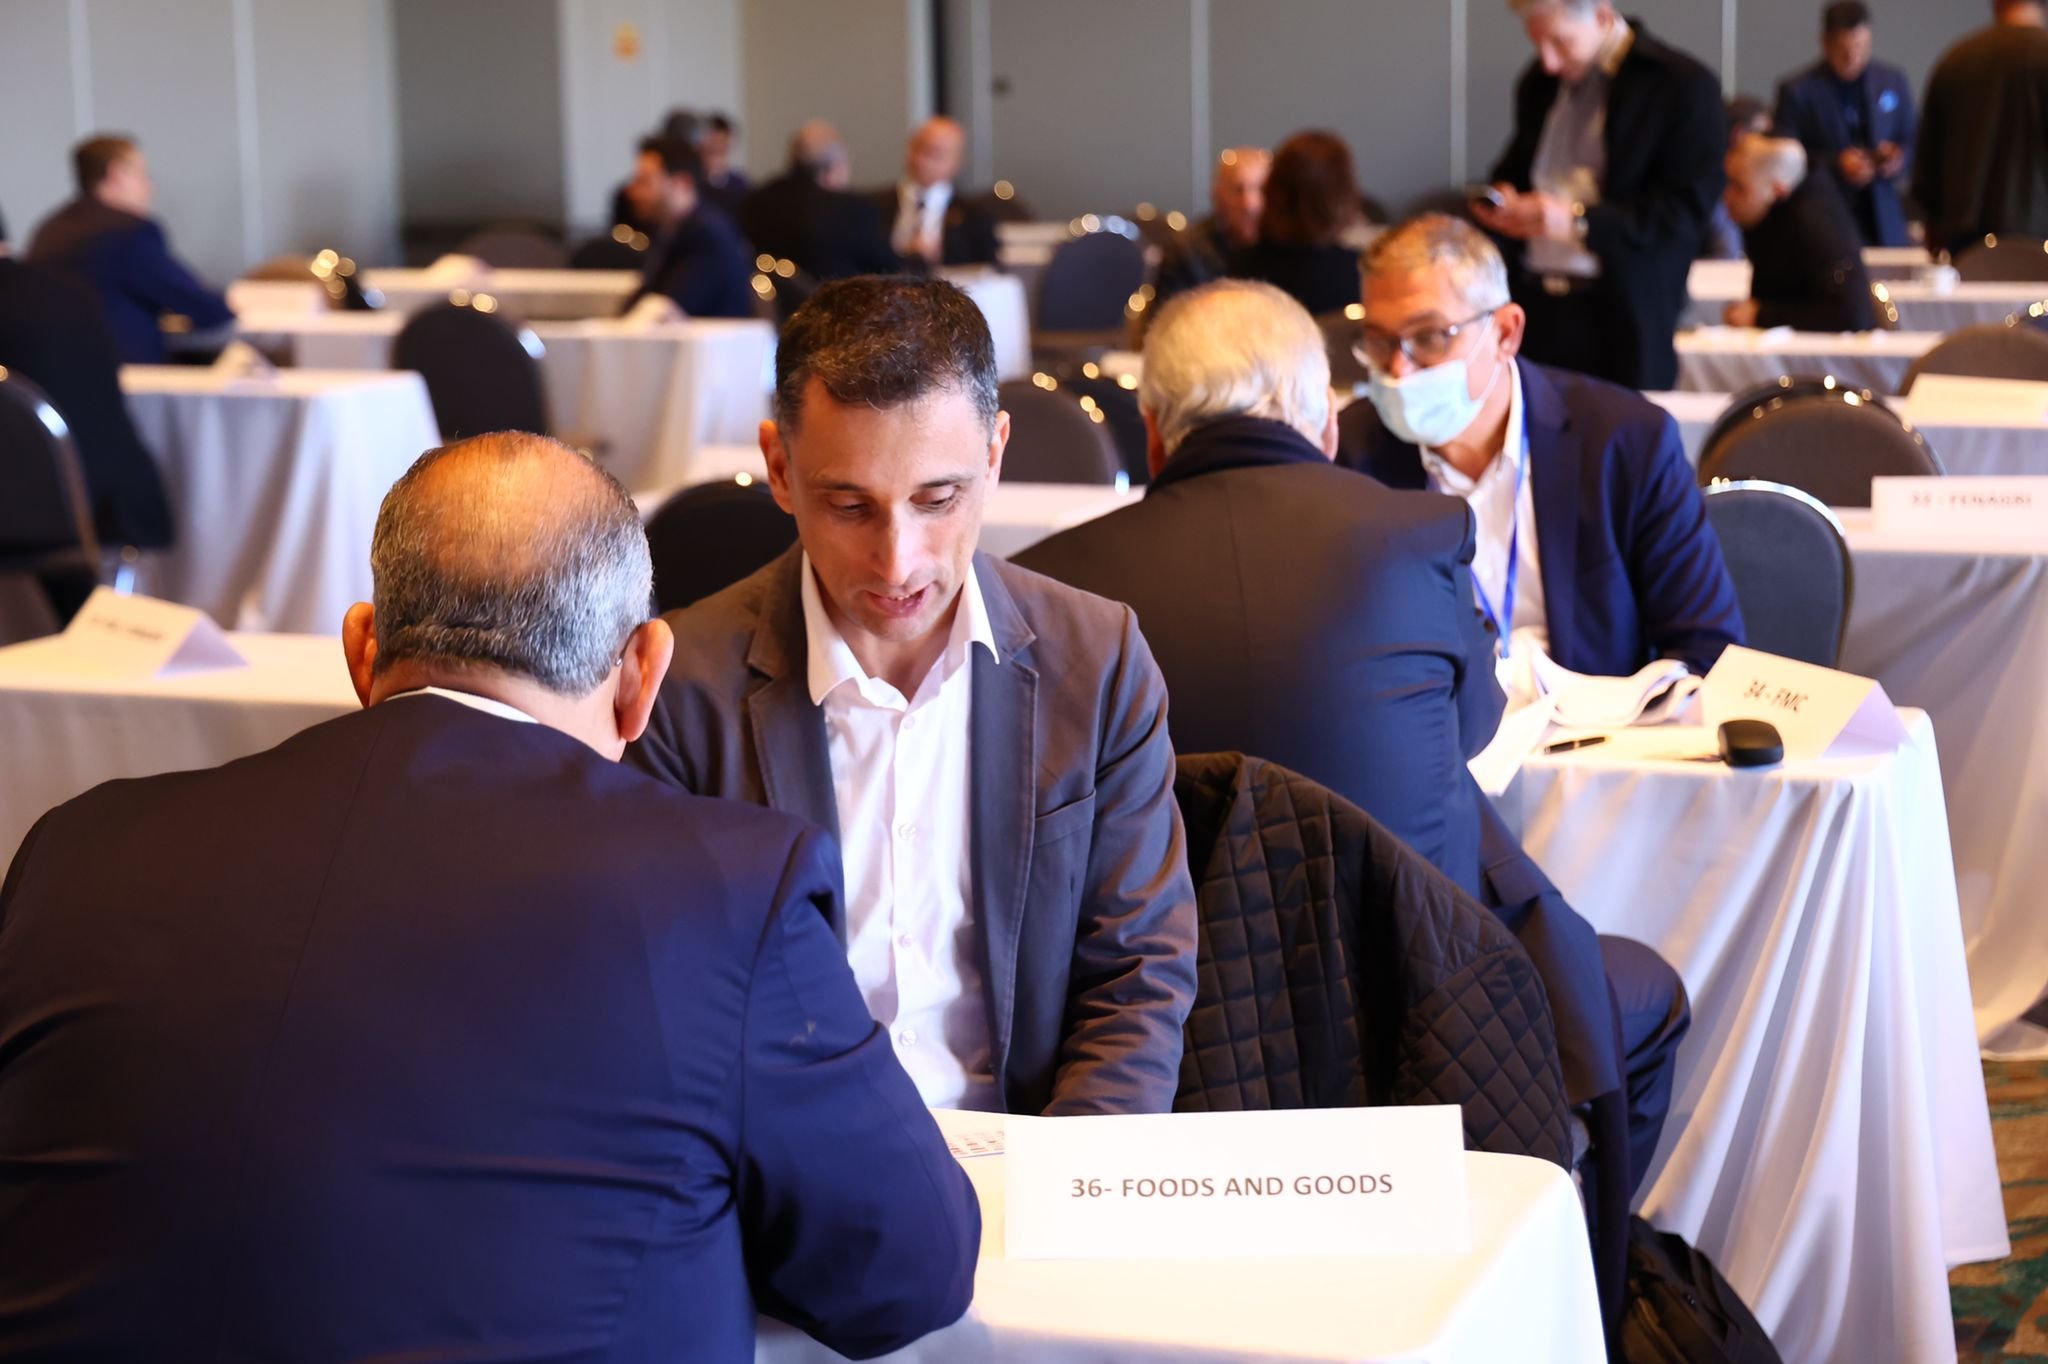 خلال لقاء بين رجال اعمال إسرائيليين ومغاربة - الوزير فريج: أقمنا منتدى لرجال الأعمال لبحث سبل التعاون الاقتصادي بين البلدين-5